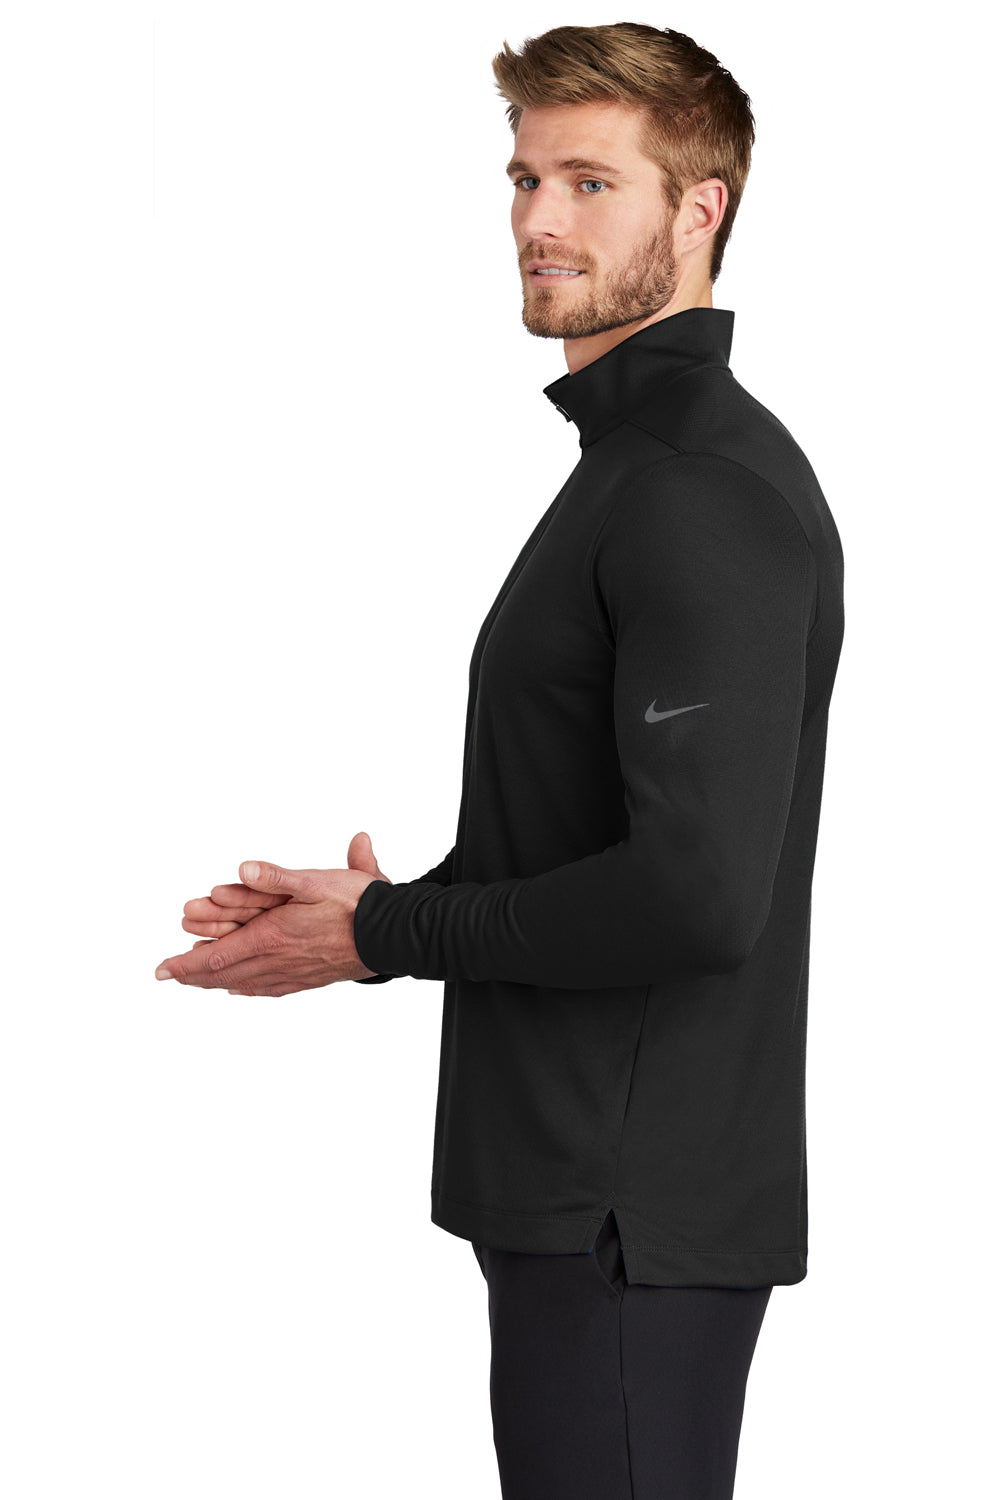 Nike NKBV6044 Mens Dri-Fit Moisture Wicking 1/4 Zip Sweatshirt Black Model Side